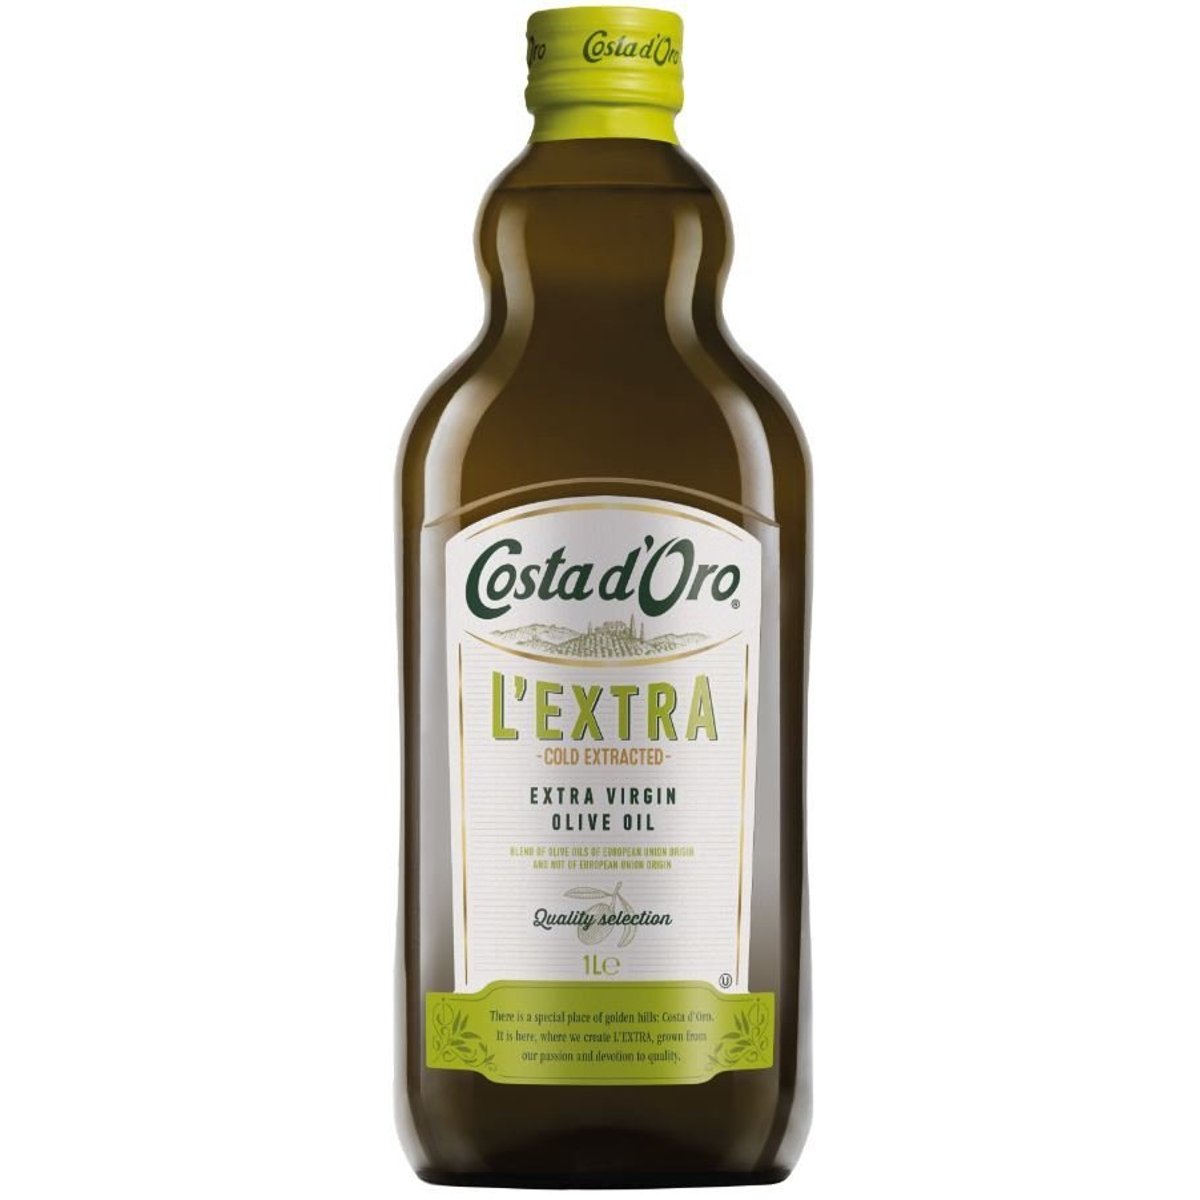 Costa d´Oro Extra panenský olivový olej